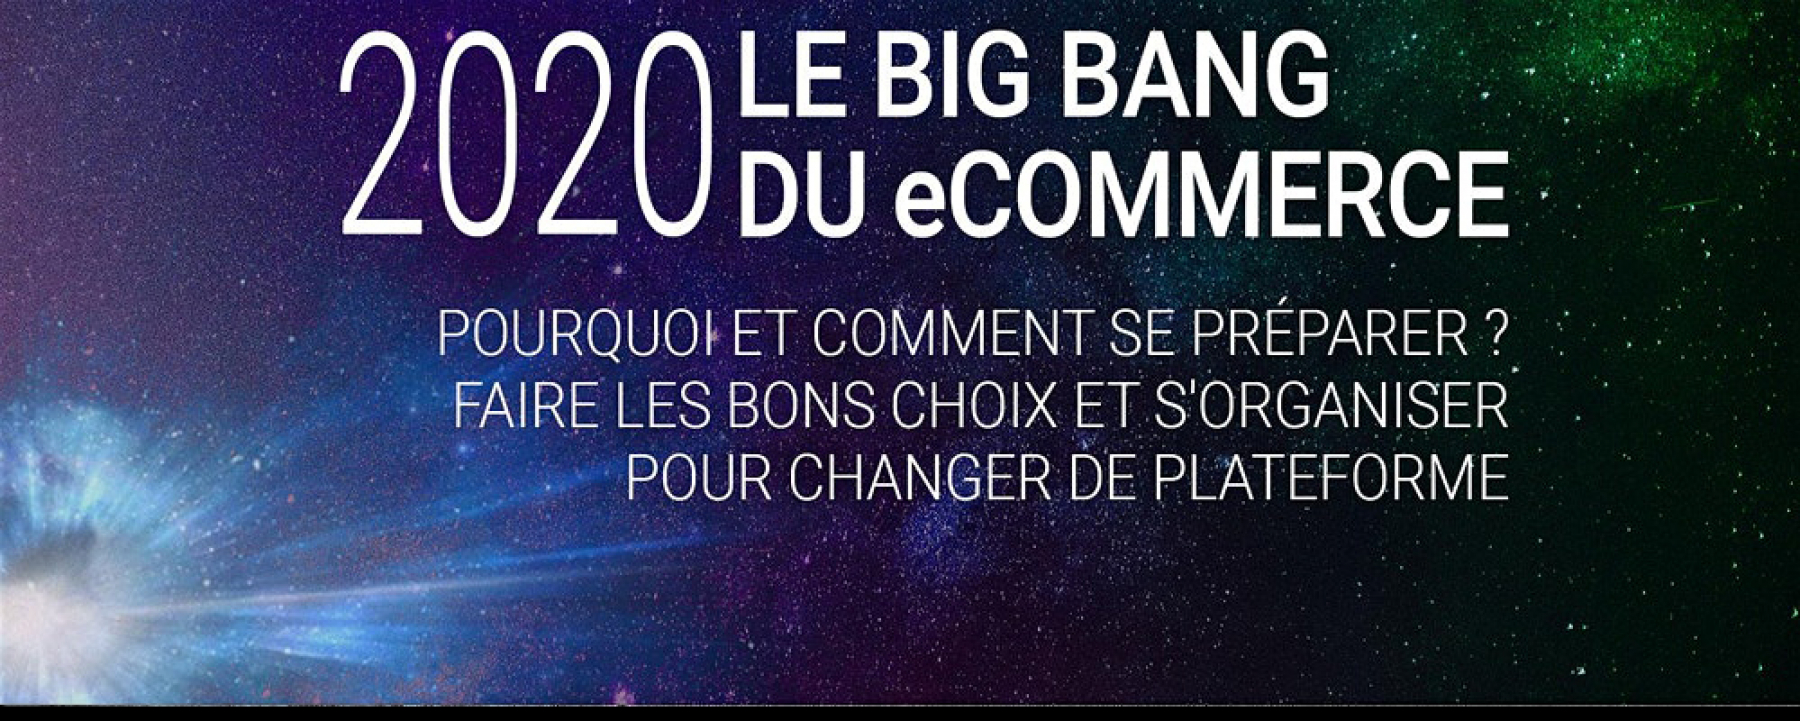 Le Big Bang du e-commerce 2020, organisé par eBrand Commerce 